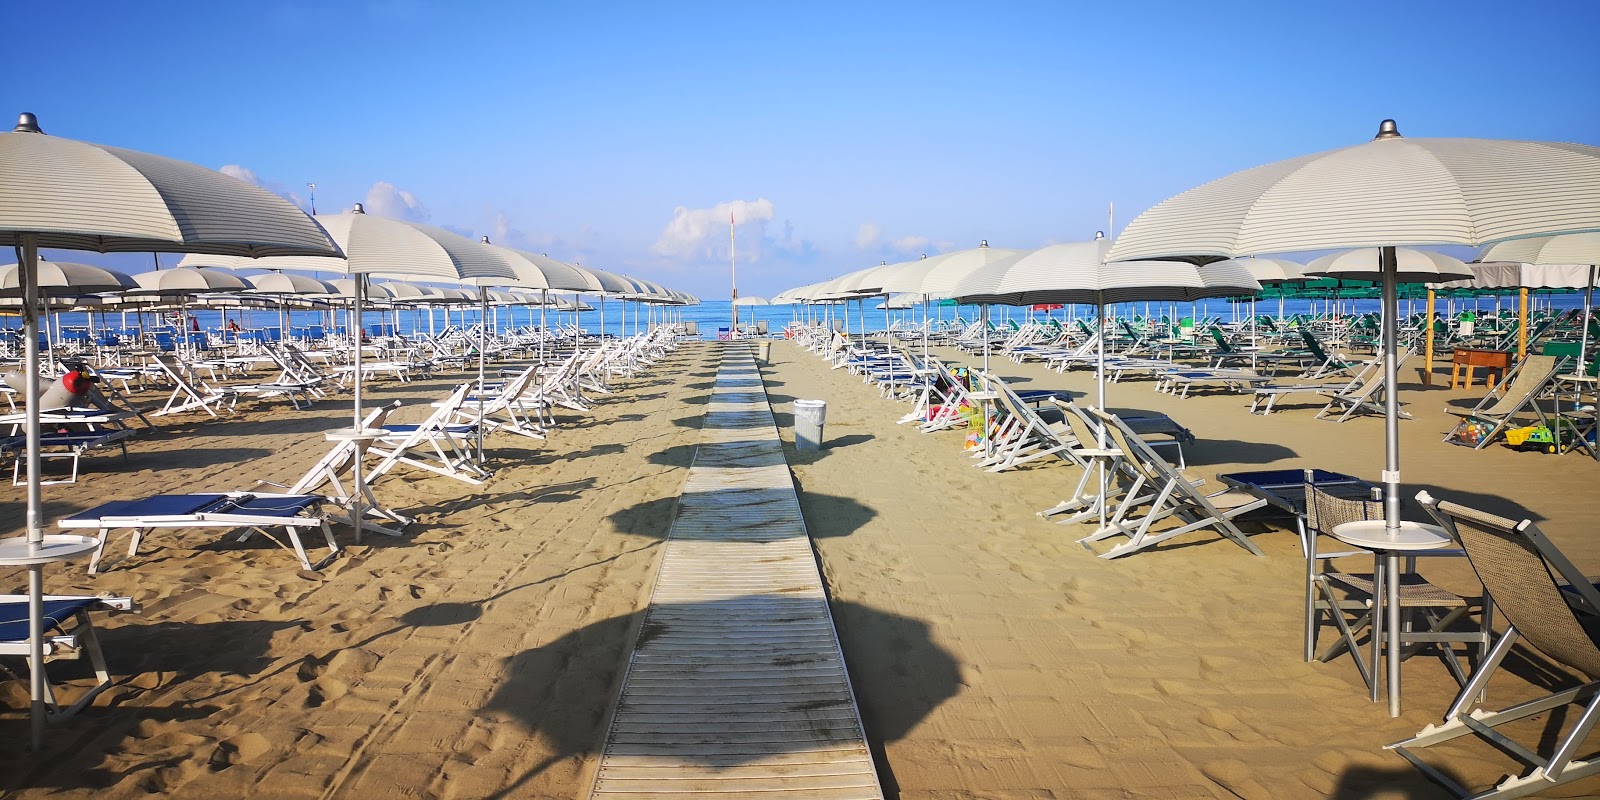 Viareggio beach'in fotoğrafı - rahatlamayı sevenler arasında popüler bir yer